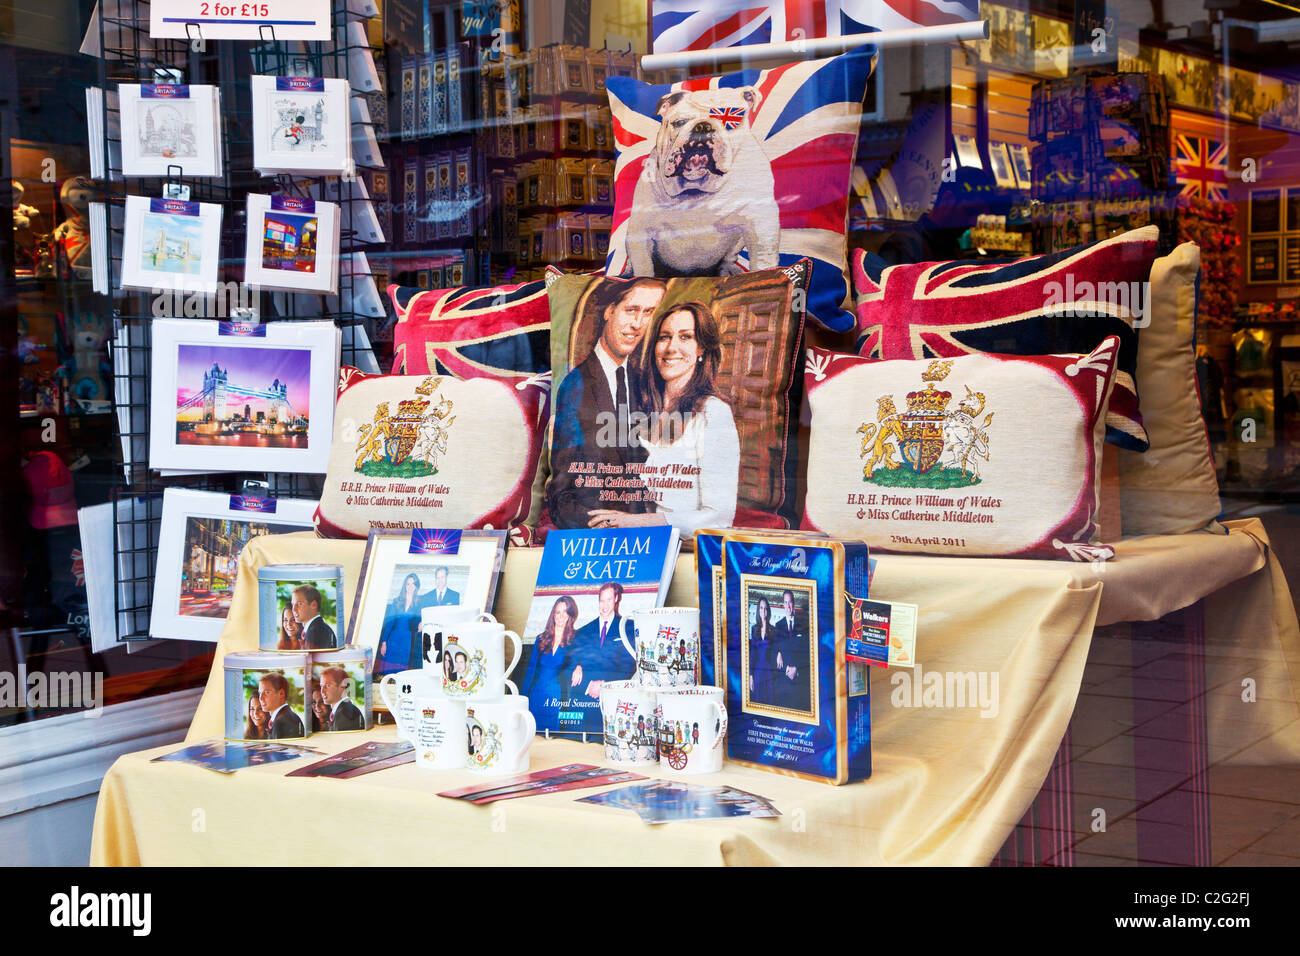 Affichage du mariage royal, William et Kate, souvenirs,souvenirs et cadeaux dans une boutique ou vitrine à Windsor, England, UK Banque D'Images